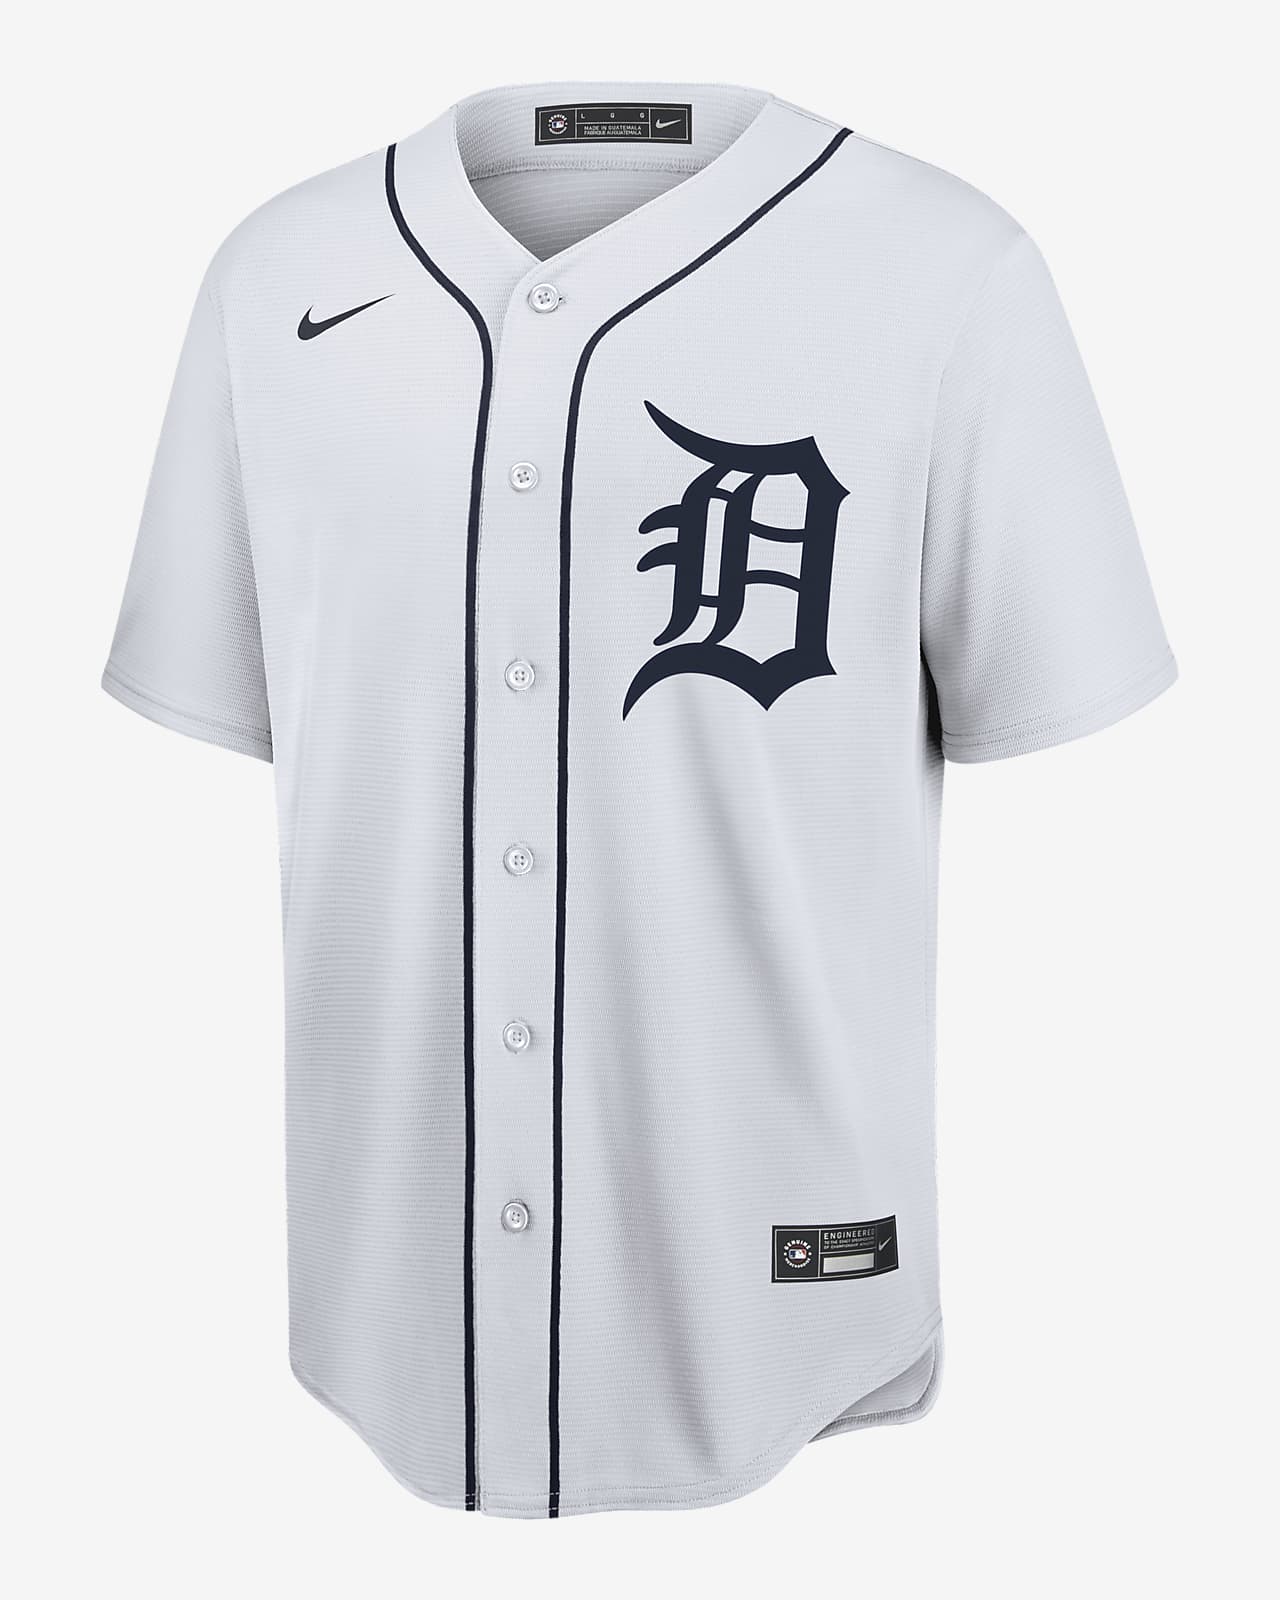 new detroit tigers uniform